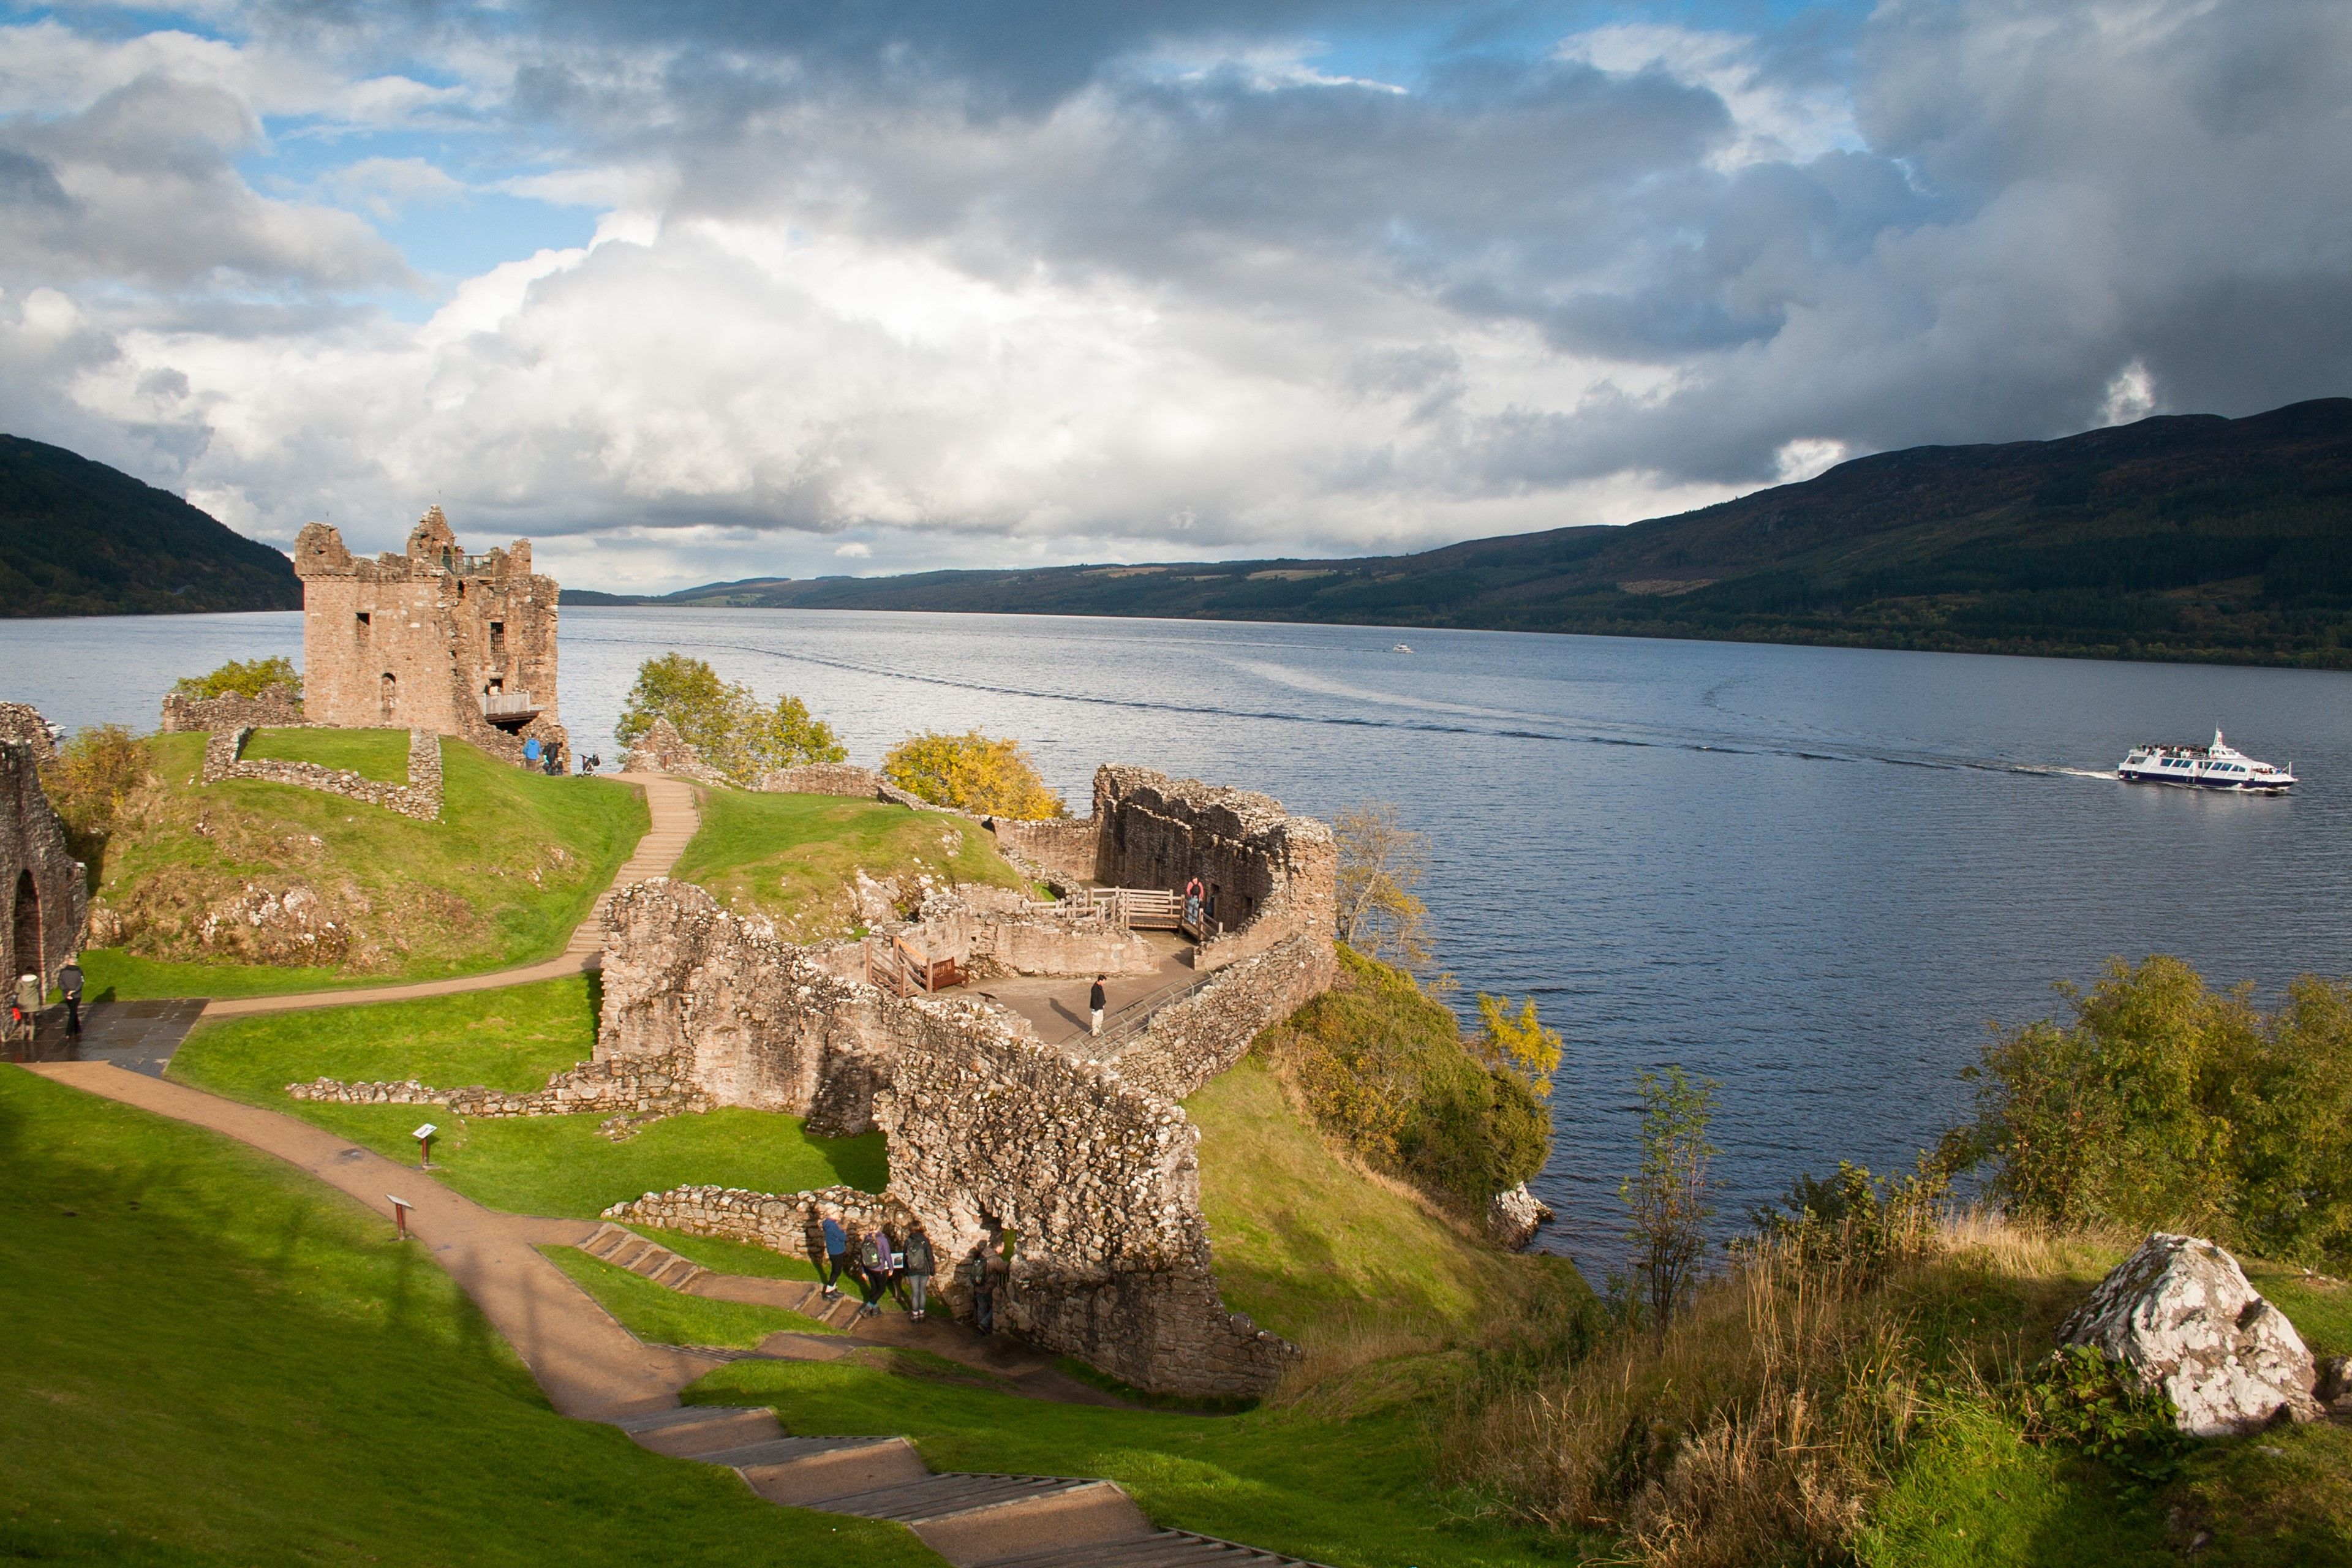 Urquhart Castle overlooking Loch Ness